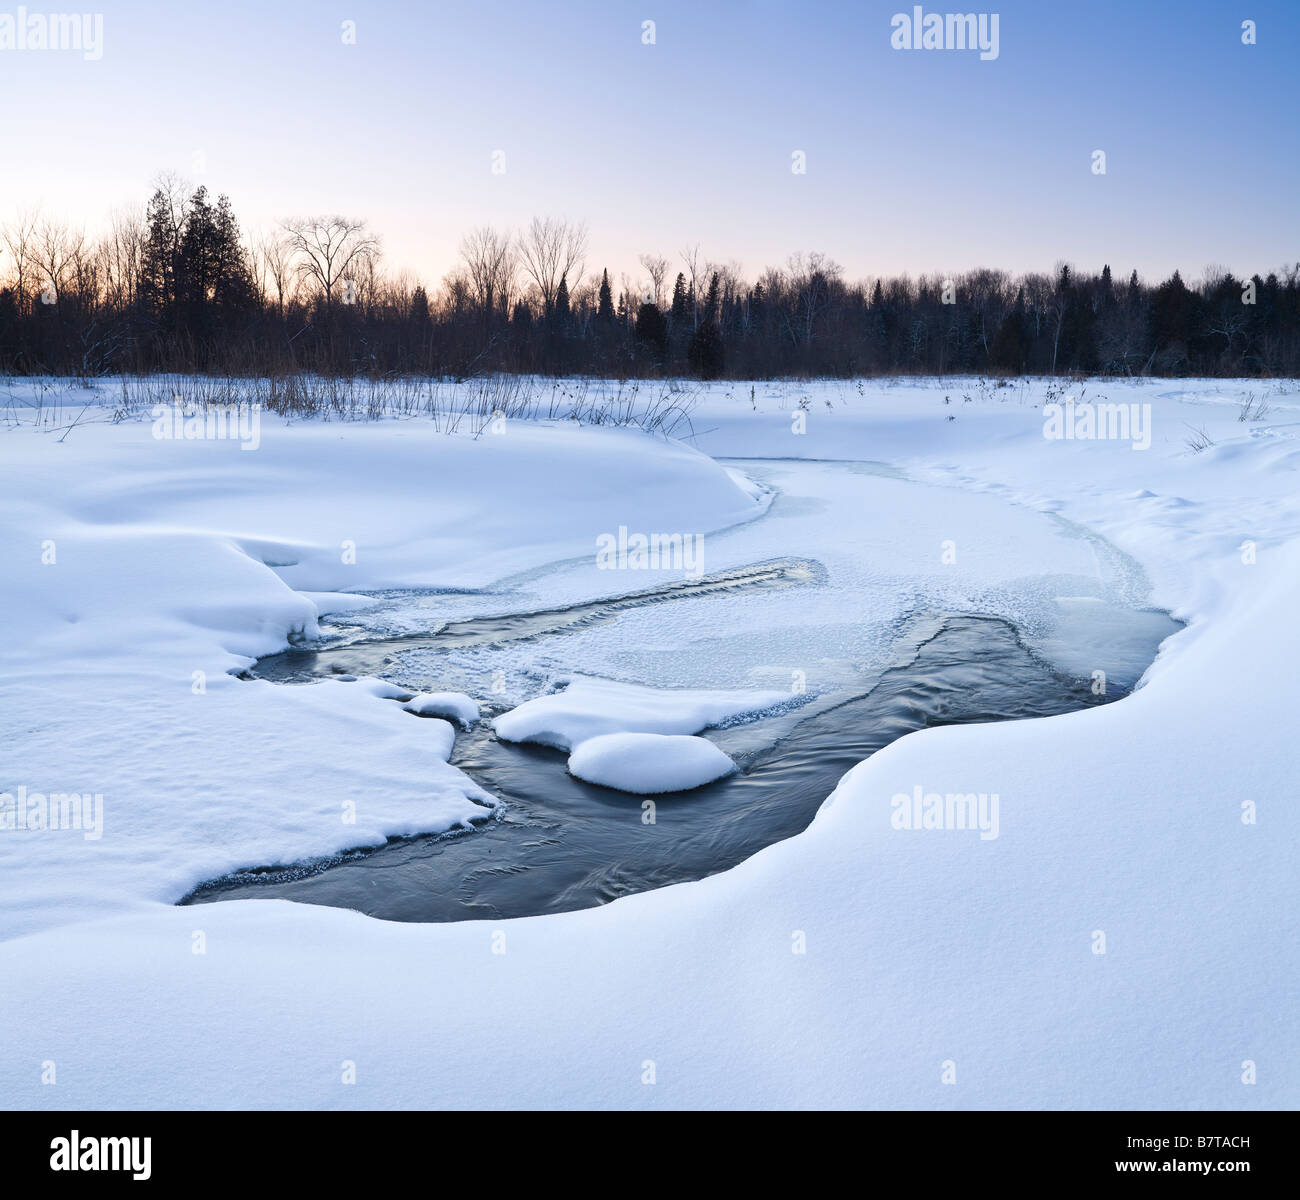 La nieve y el hielo en el Río Negro, Oriente Gwillimbury, Ontario, Canadá Foto de stock